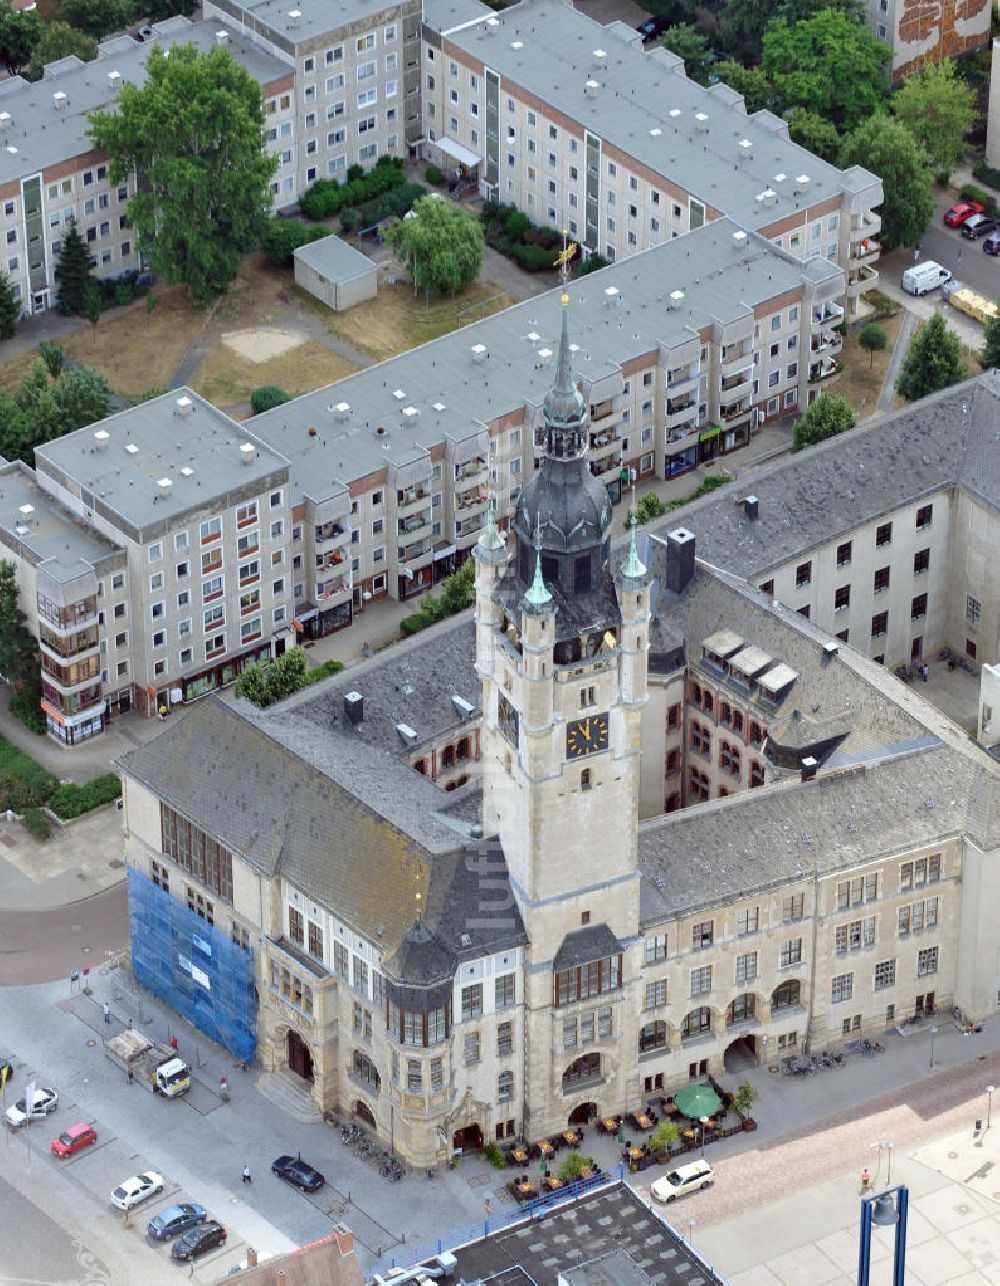 Luftbild Dessau - Roßlau - Rathaus der Stadt Dessau-Roßlau am Dessauer Marktplatz